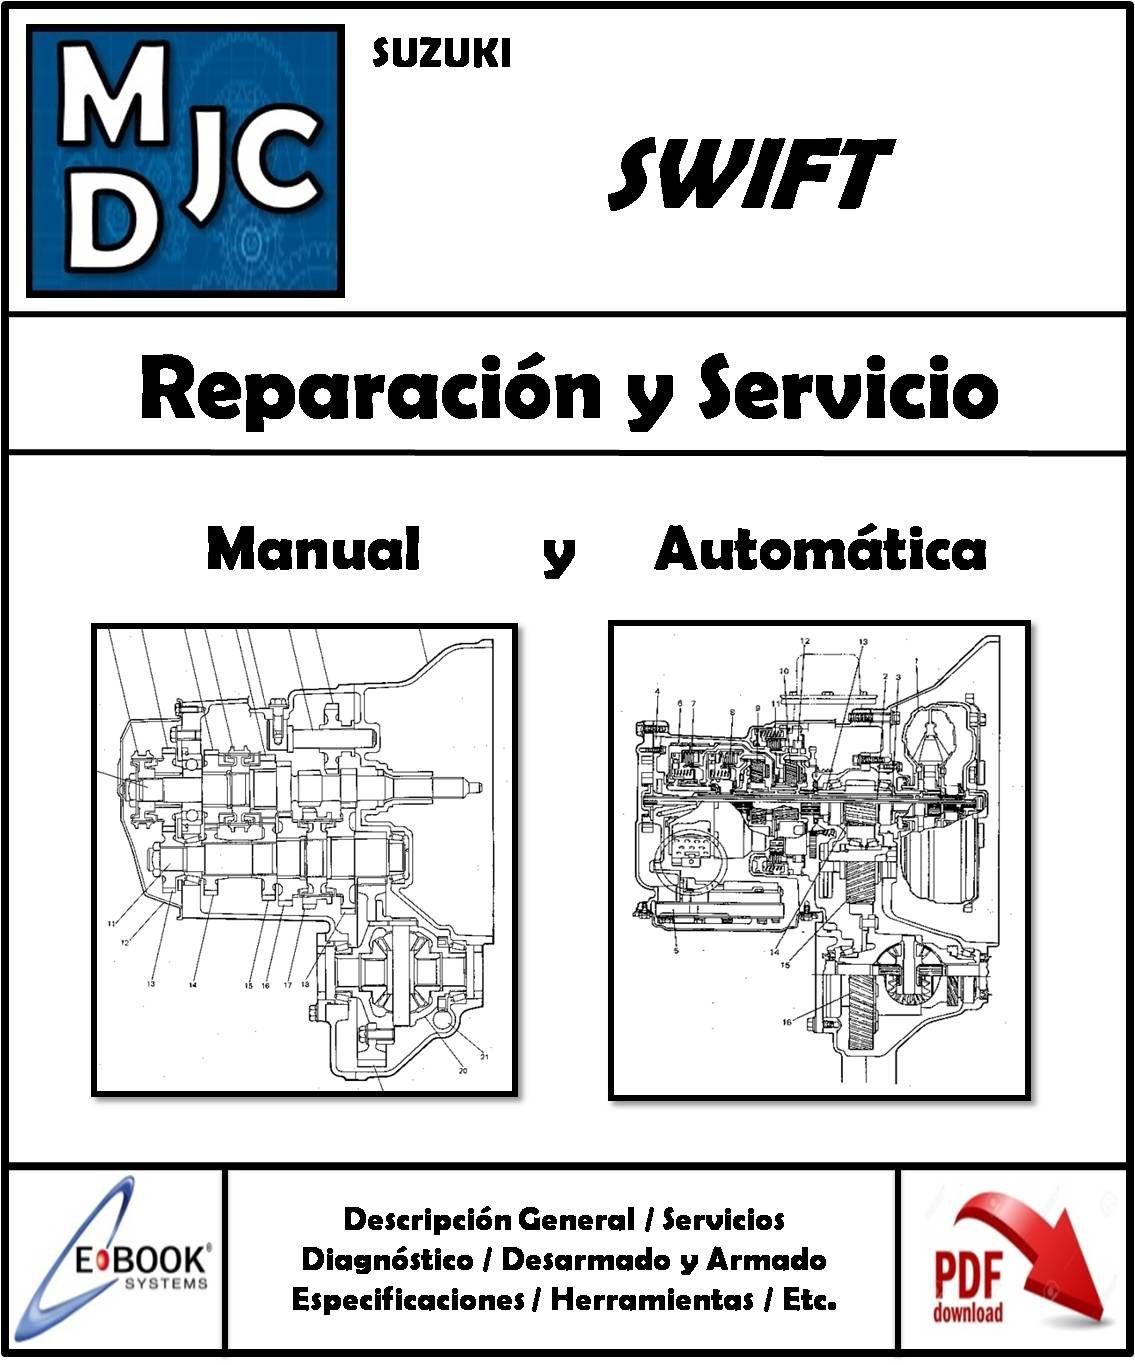 Suzuki Cajas Manual y Automática (Swift)